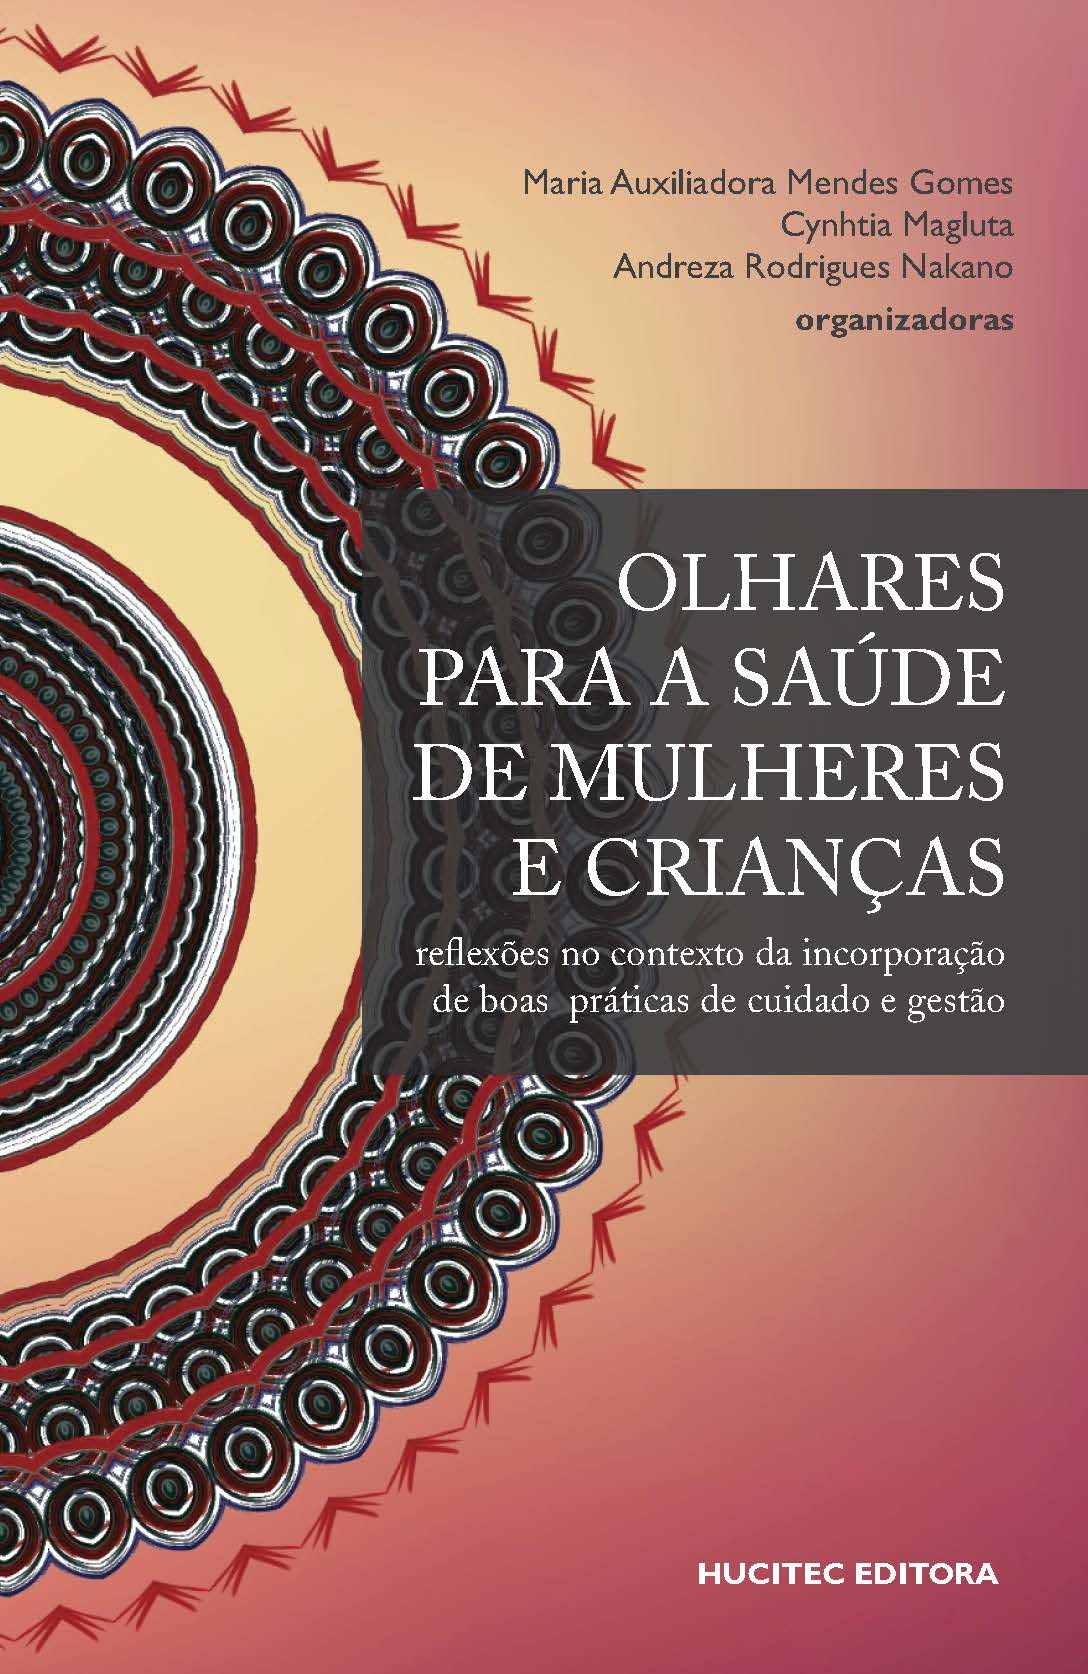 Maria Auxiliadora Mendes Gomes, Cynthia Magluta & Andreza Rodrigues Nakano (orgs.)  |  Olhares para a saúde de mulheres e crianças